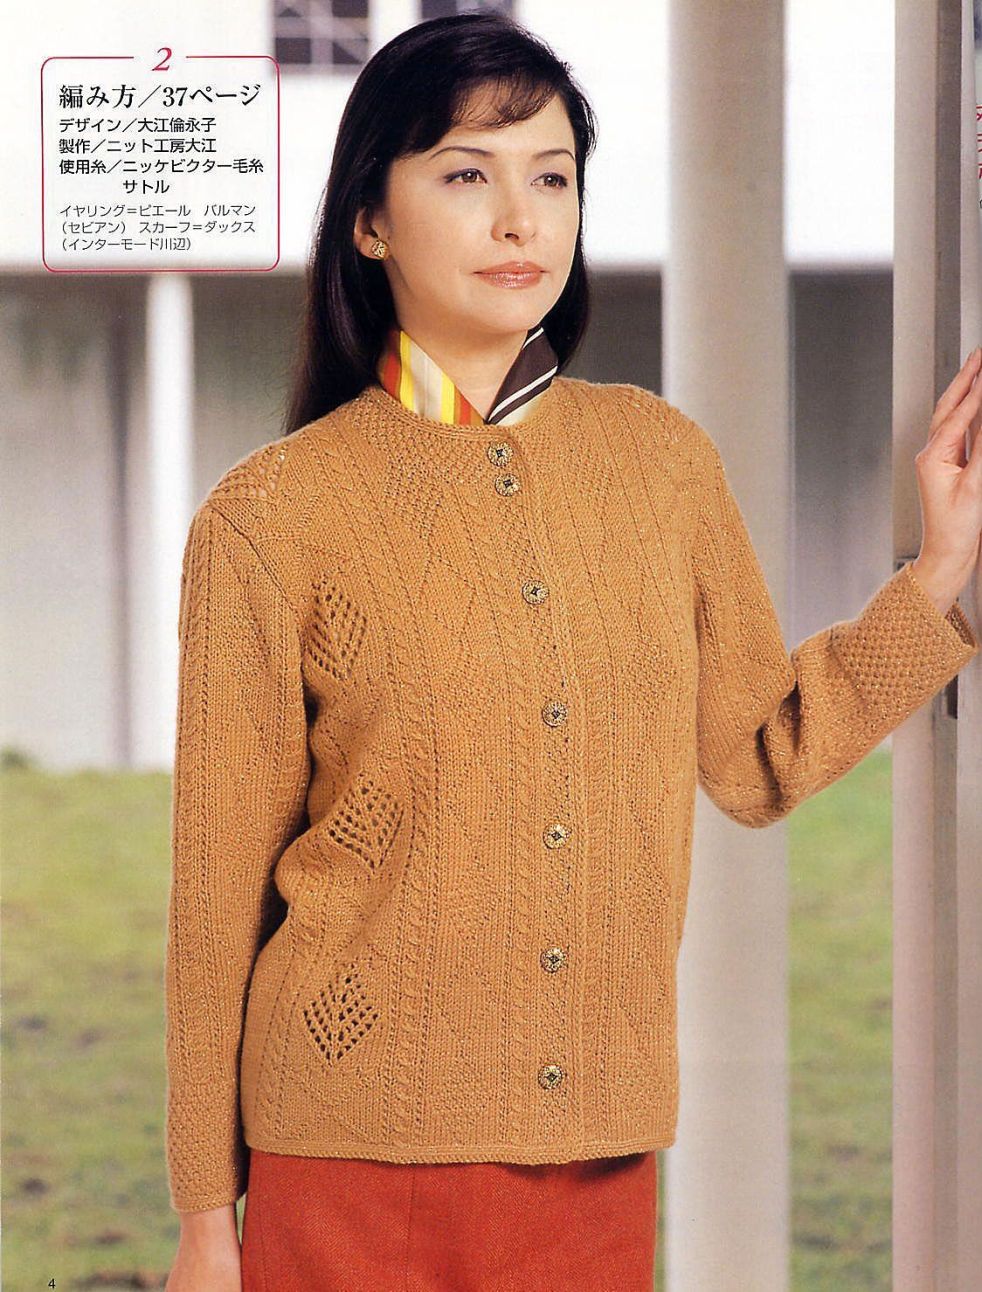 Stylish yellow jacket easy knitting pattern